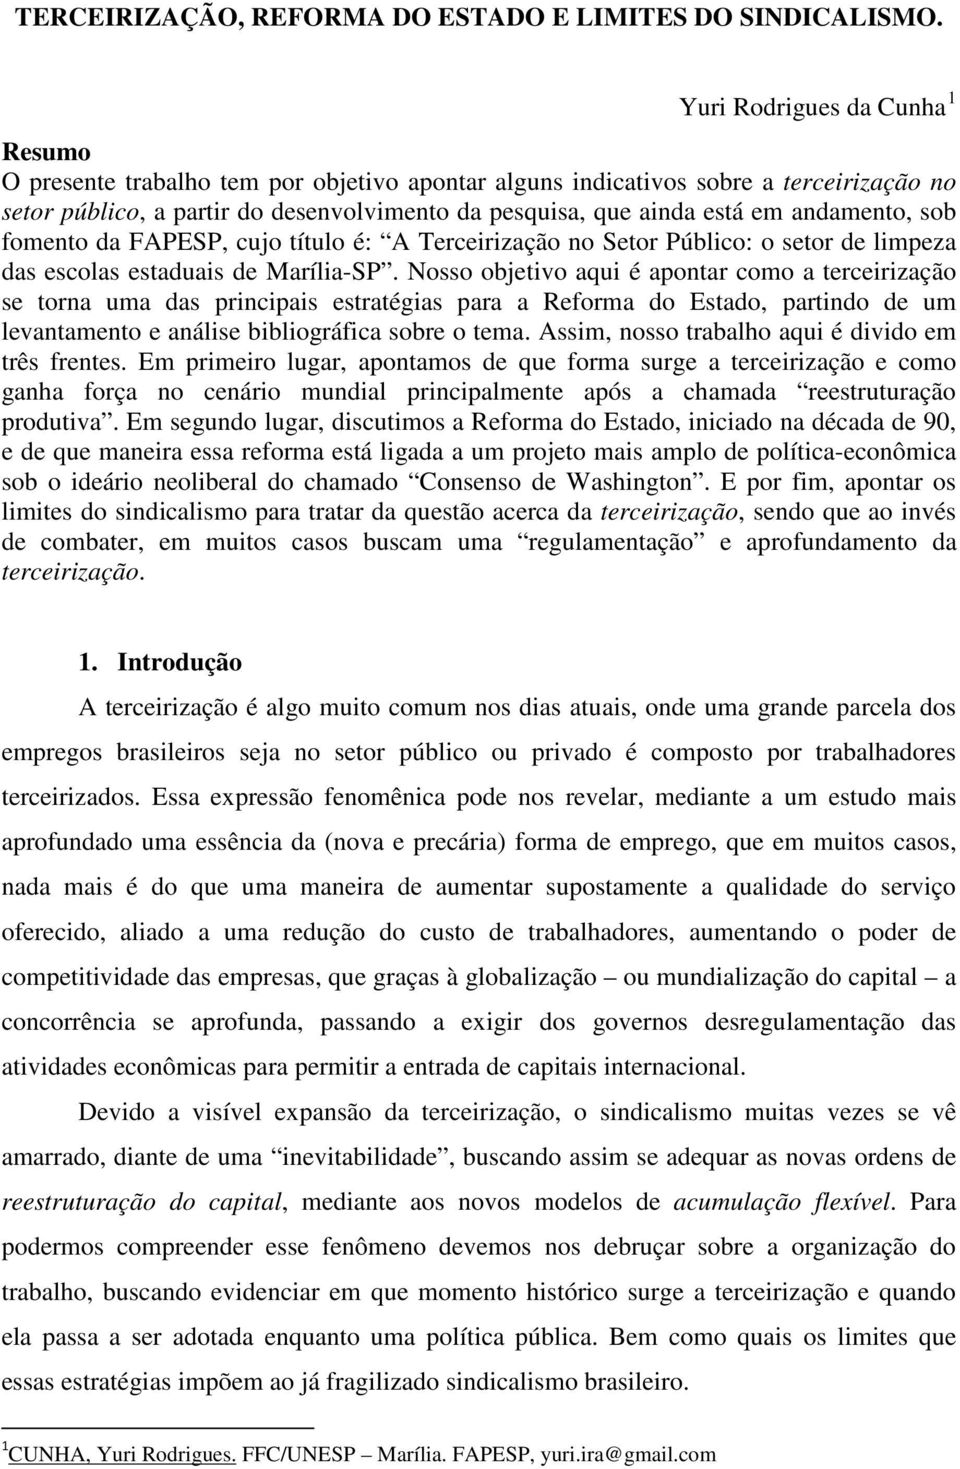 andamento, sob fomento da FAPESP, cujo título é: A Terceirização no Setor Público: o setor de limpeza das escolas estaduais de Marília-SP.